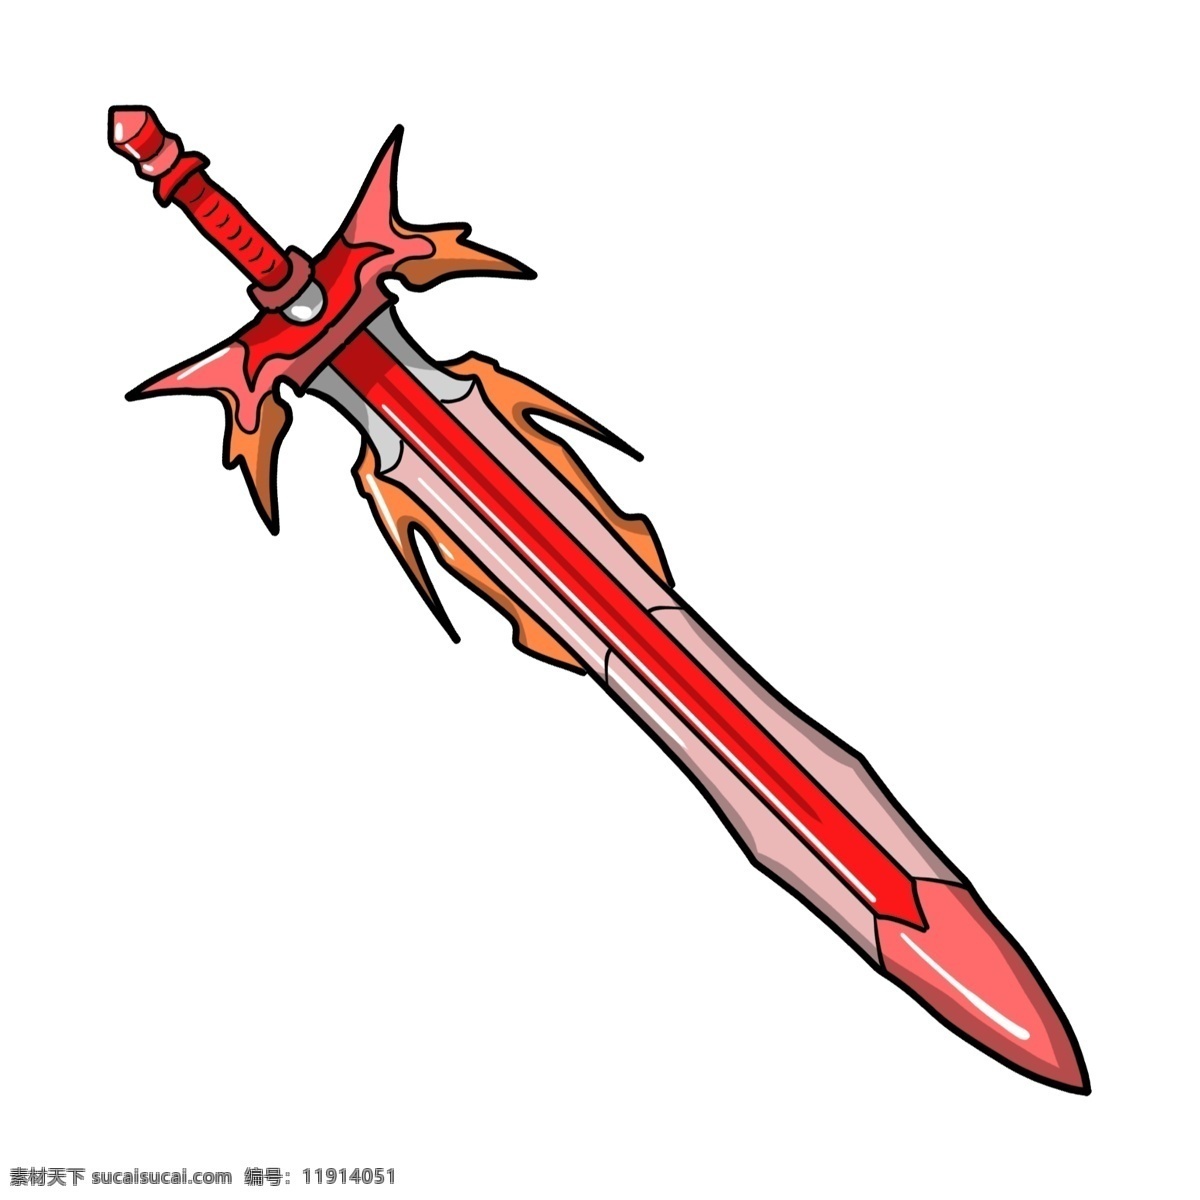 卡通 红色 装饰 长剑 装饰仙剑 重剑 古风古剑 红色花纹宝剑 兵器 利器 武器 卡通刀剑 游戏道具